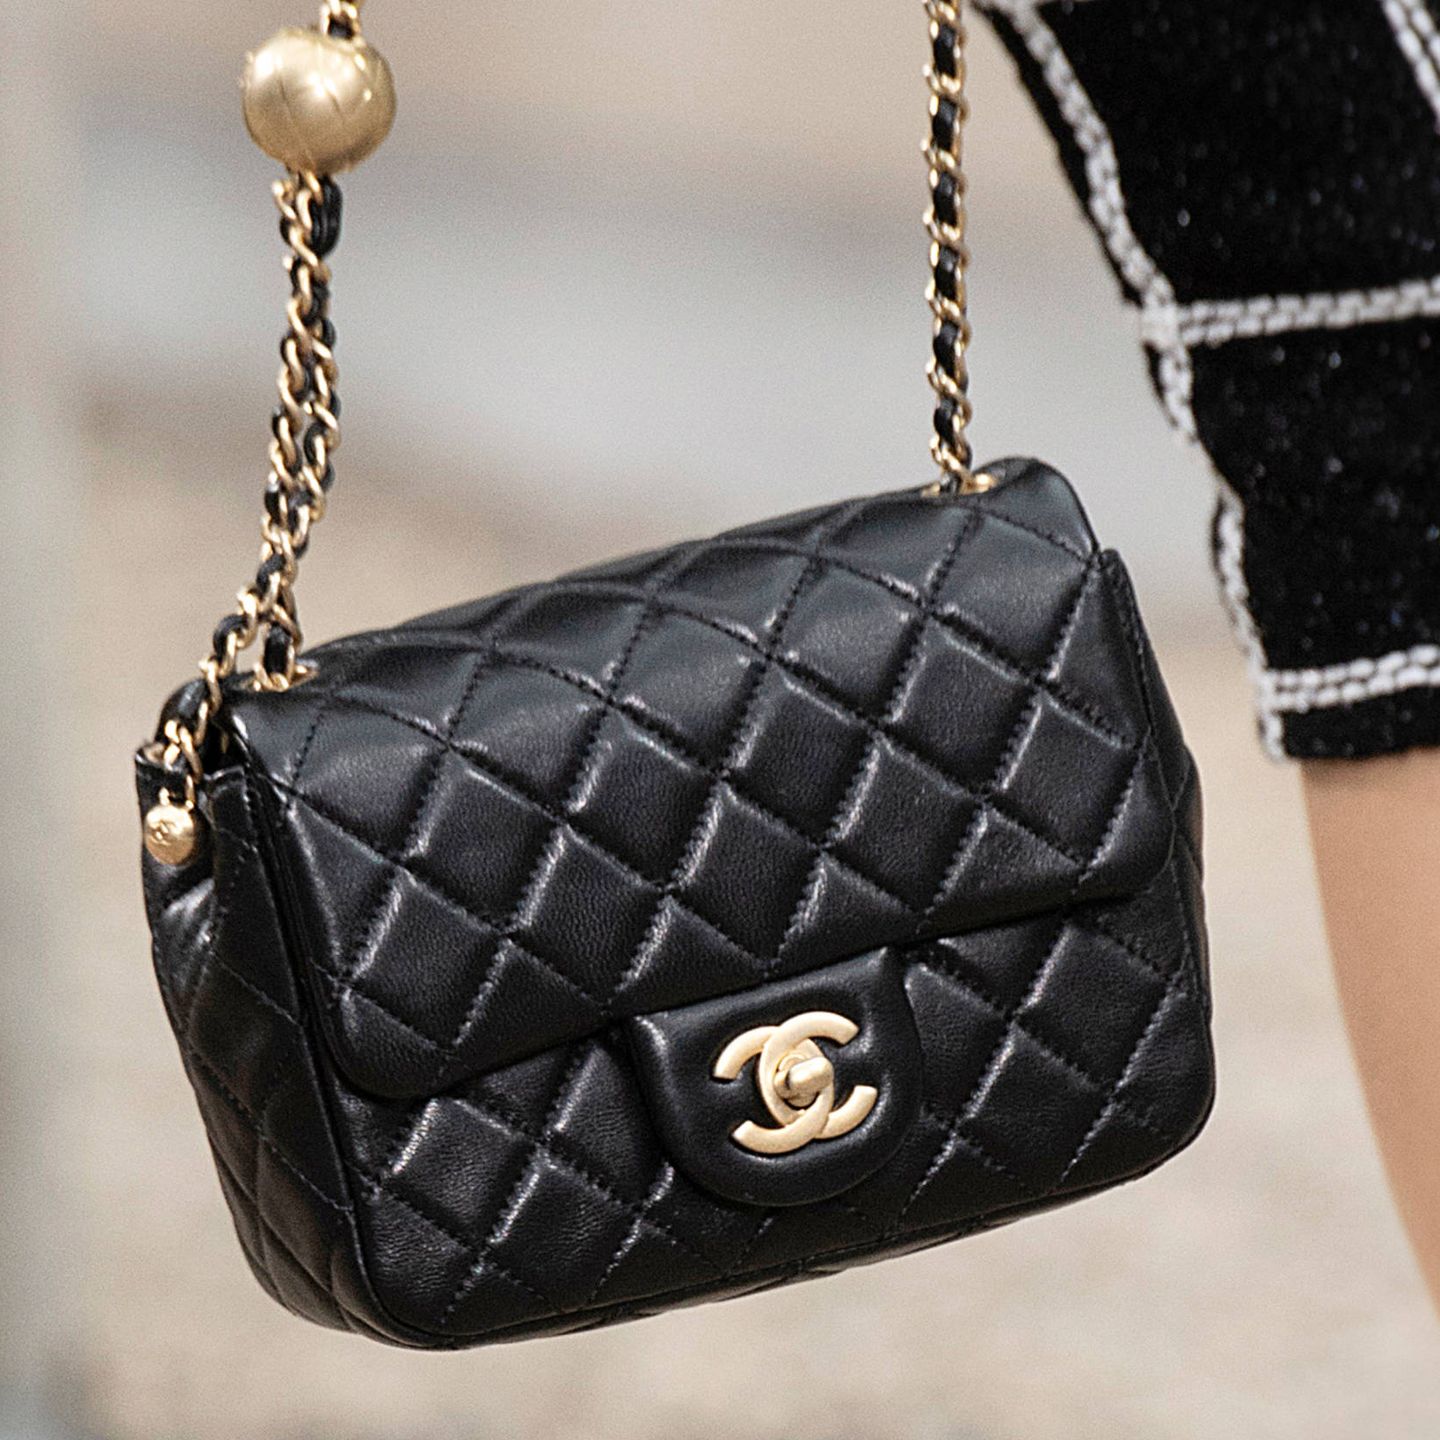 El emblemático bolso 2.55 de Chanel, en el último desfile de la maison. (Cortesía)